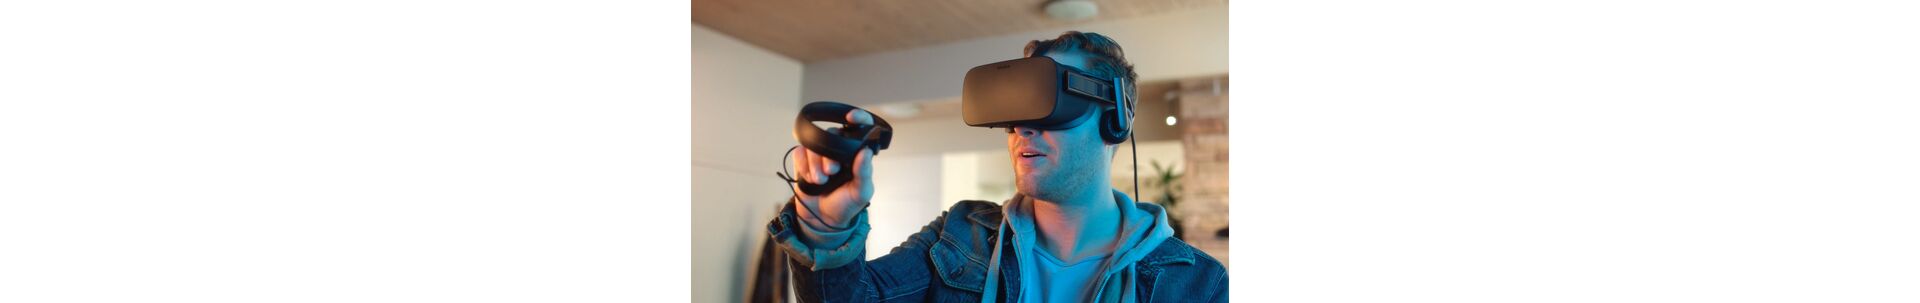 VR как инструмент обучения сотрудников: диалоговые симуляторы для Soft skills